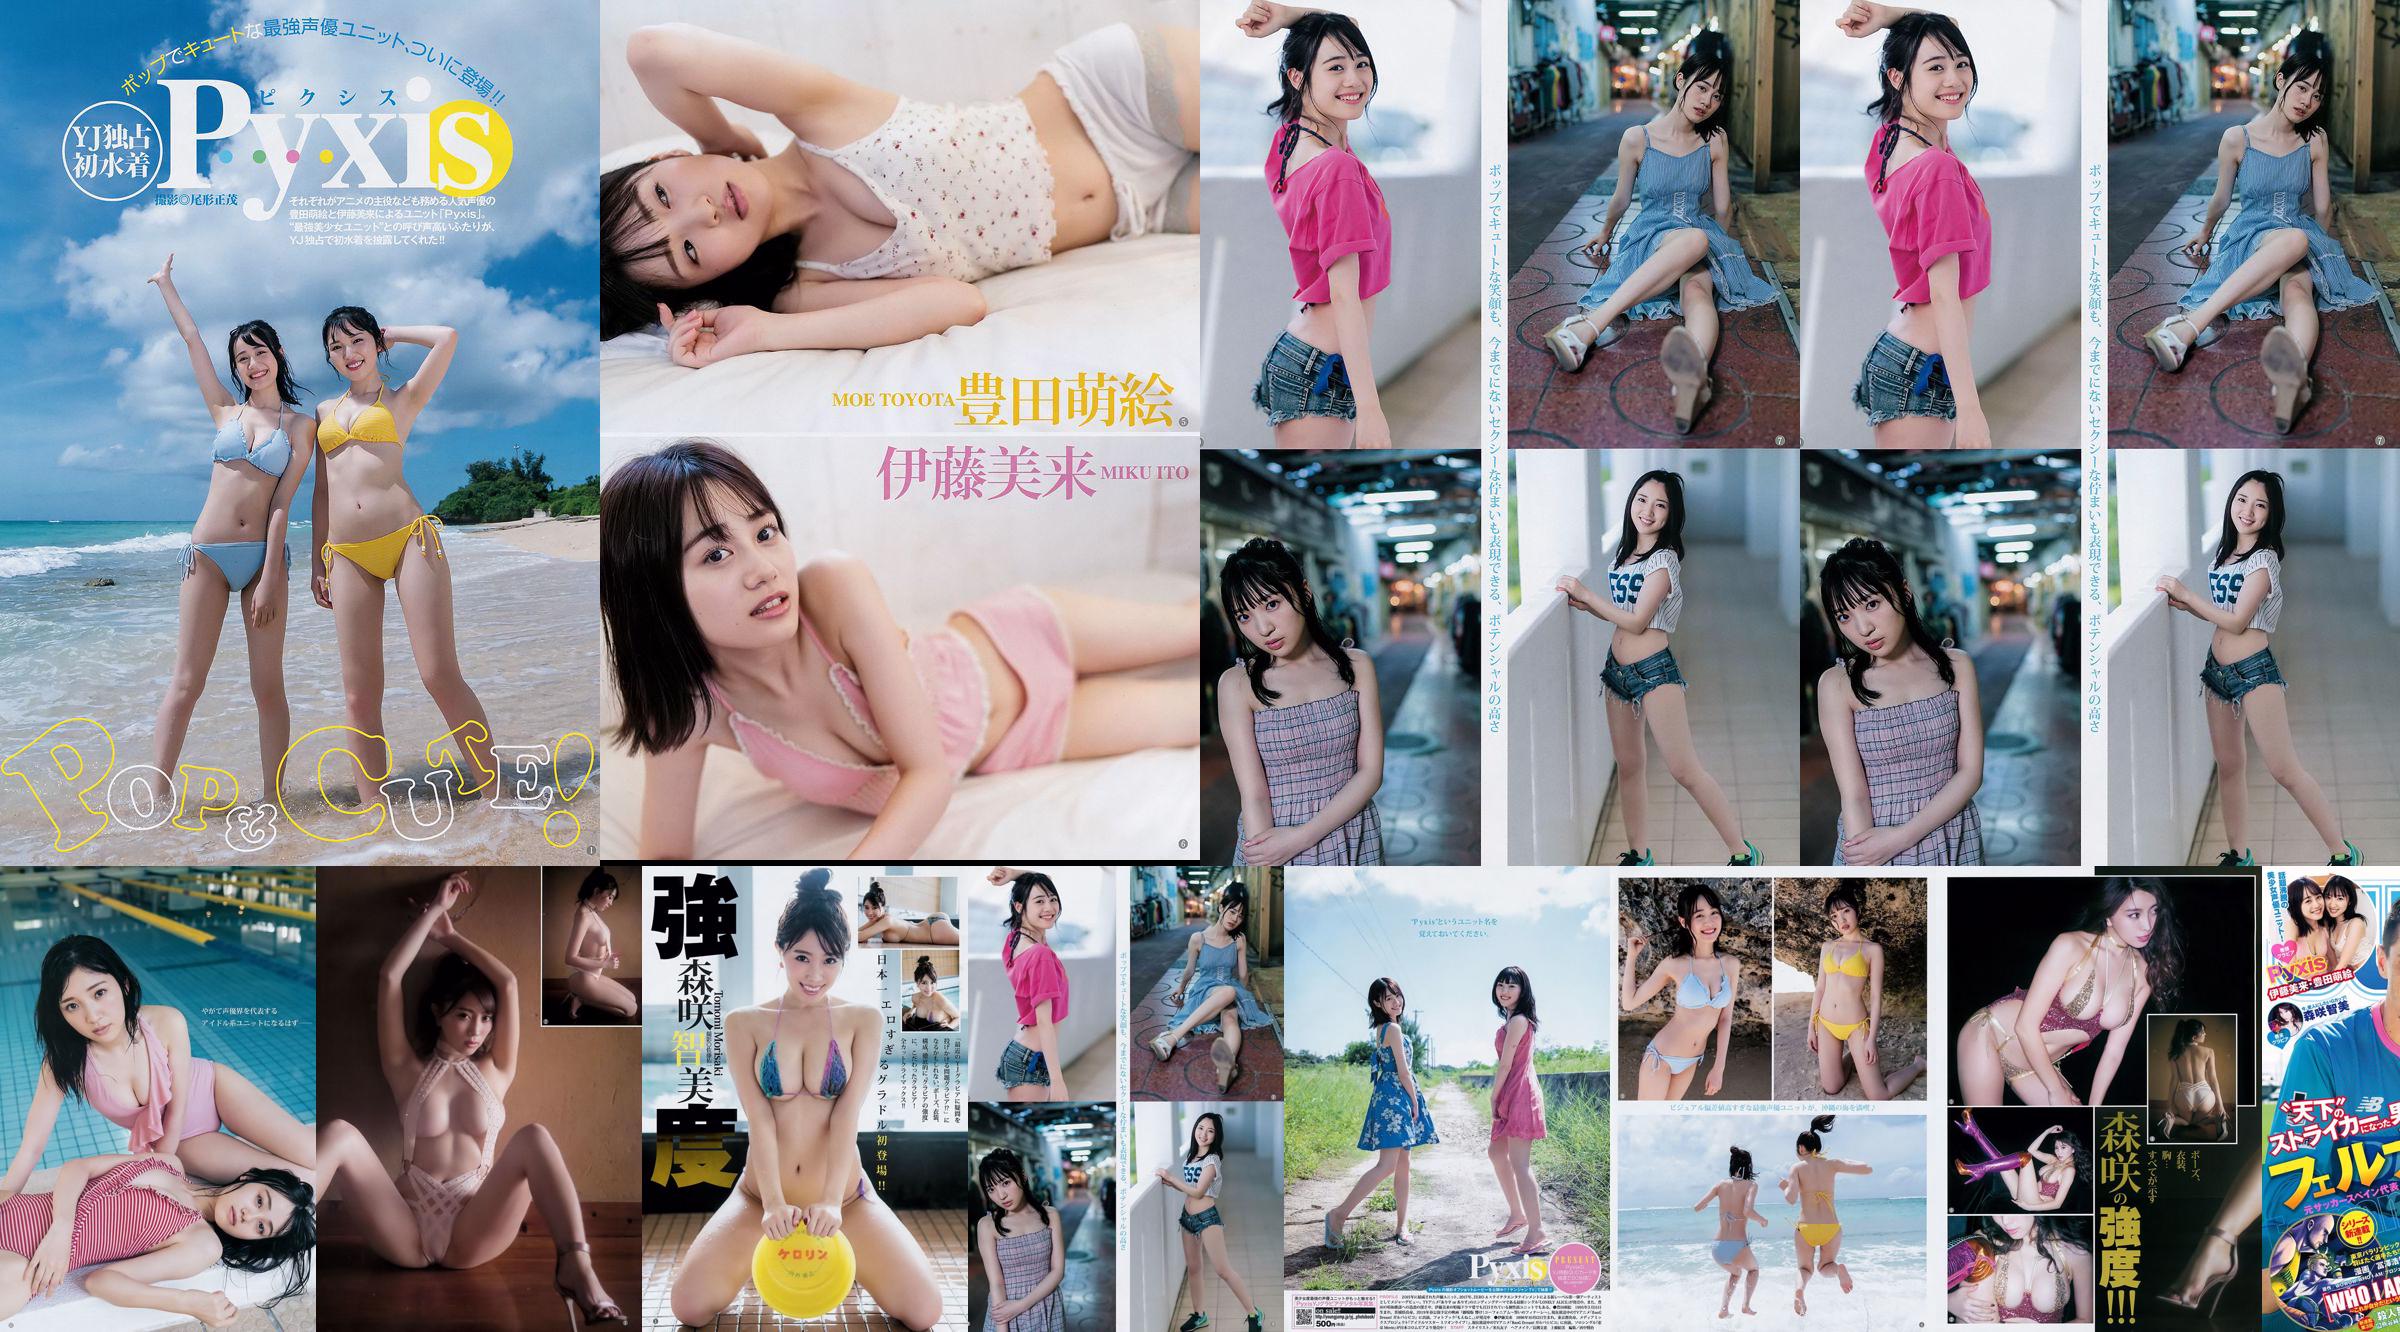 [Beautyleg] NO.851 Leg Model Miki Beauty Legs No.013f0a Página 1